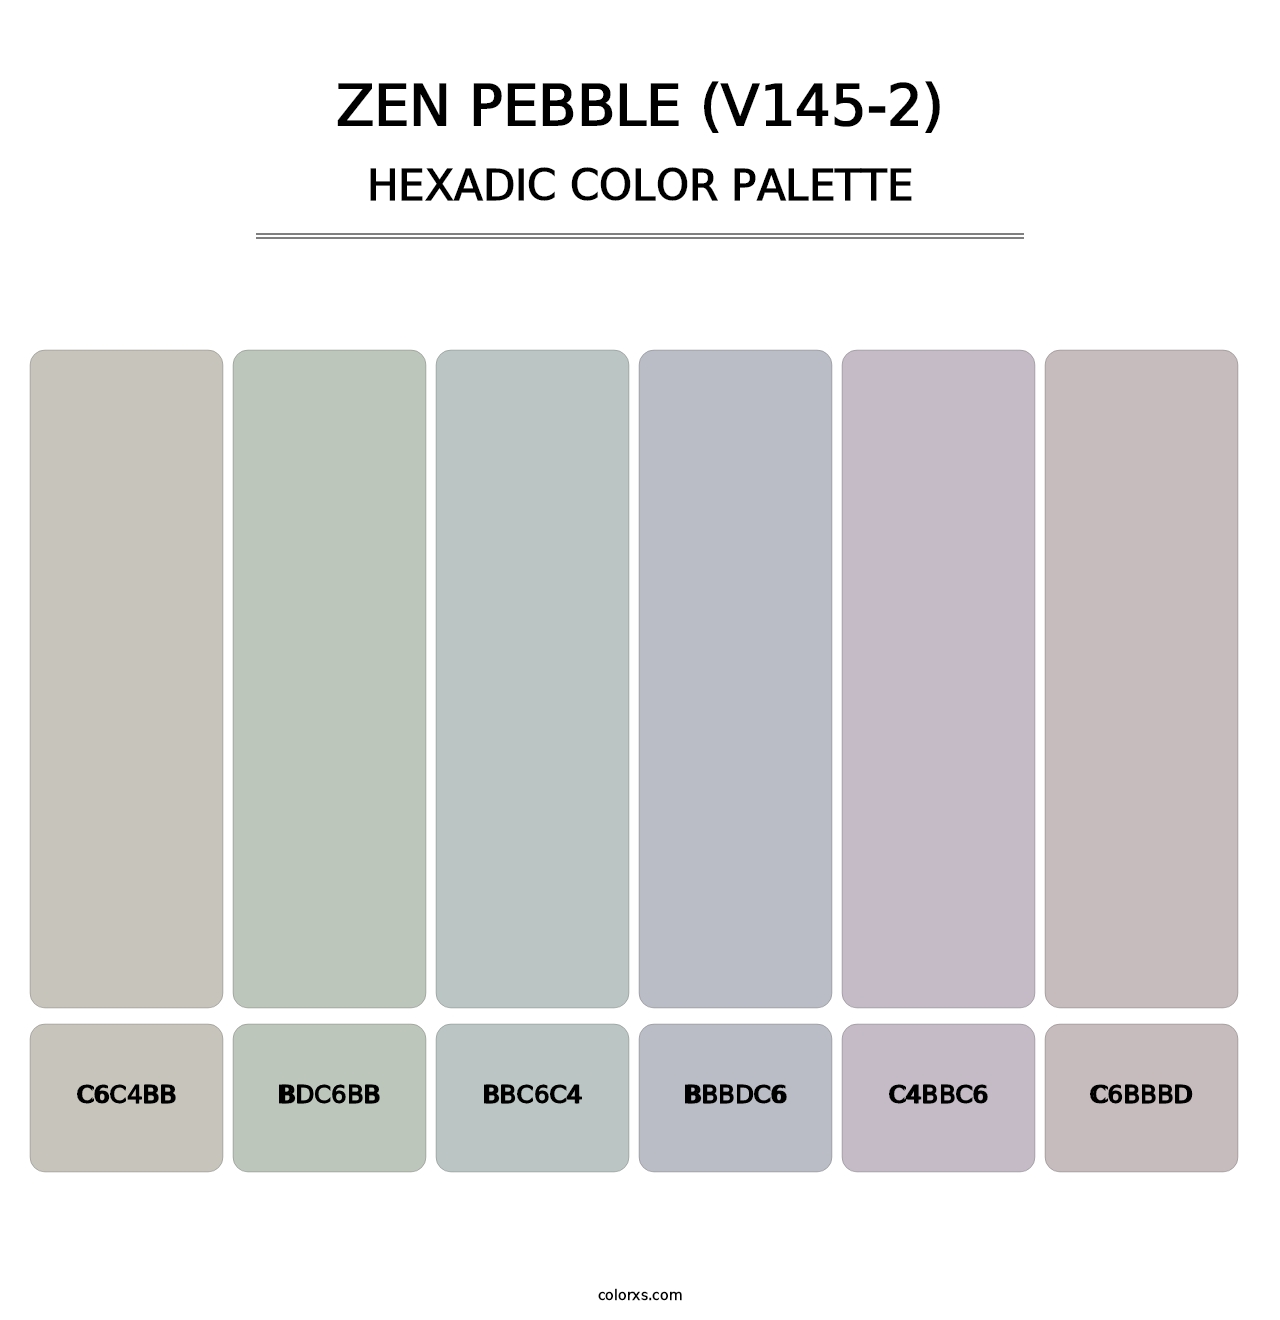 Zen Pebble (V145-2) - Hexadic Color Palette